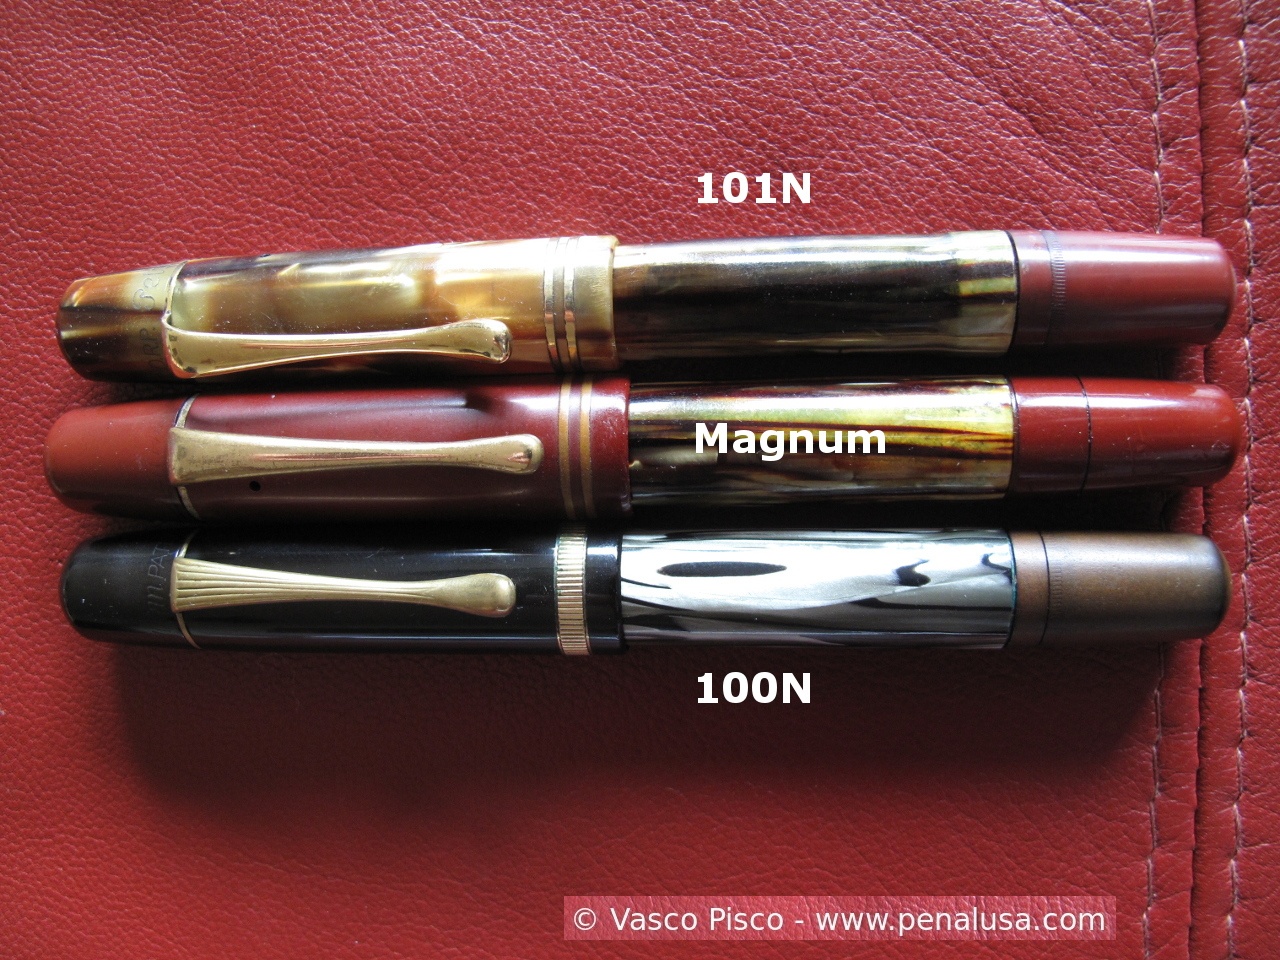 Pelikan 101N, Magnum and 100N comparison